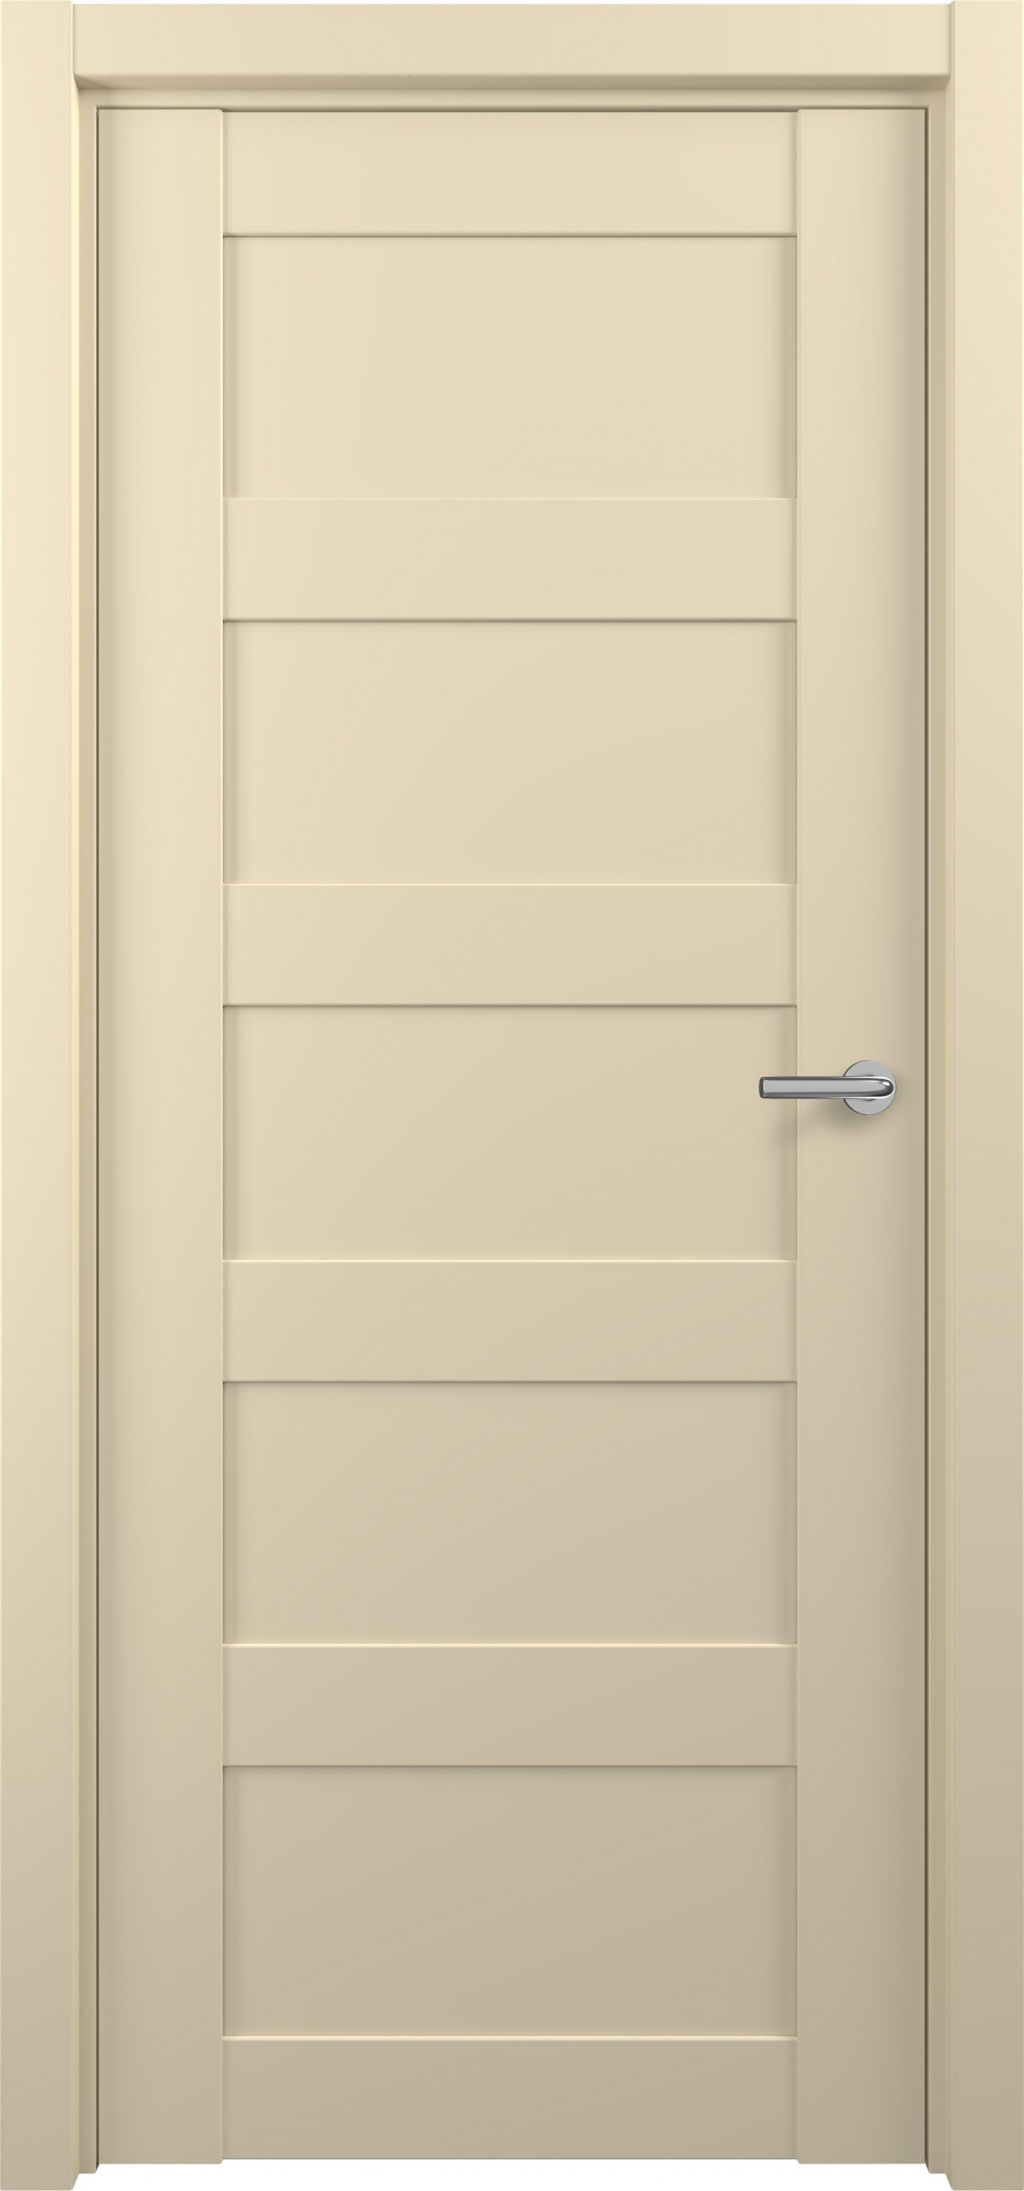 Zadoor Межкомнатная дверь S14, арт. 15821 - фото №1